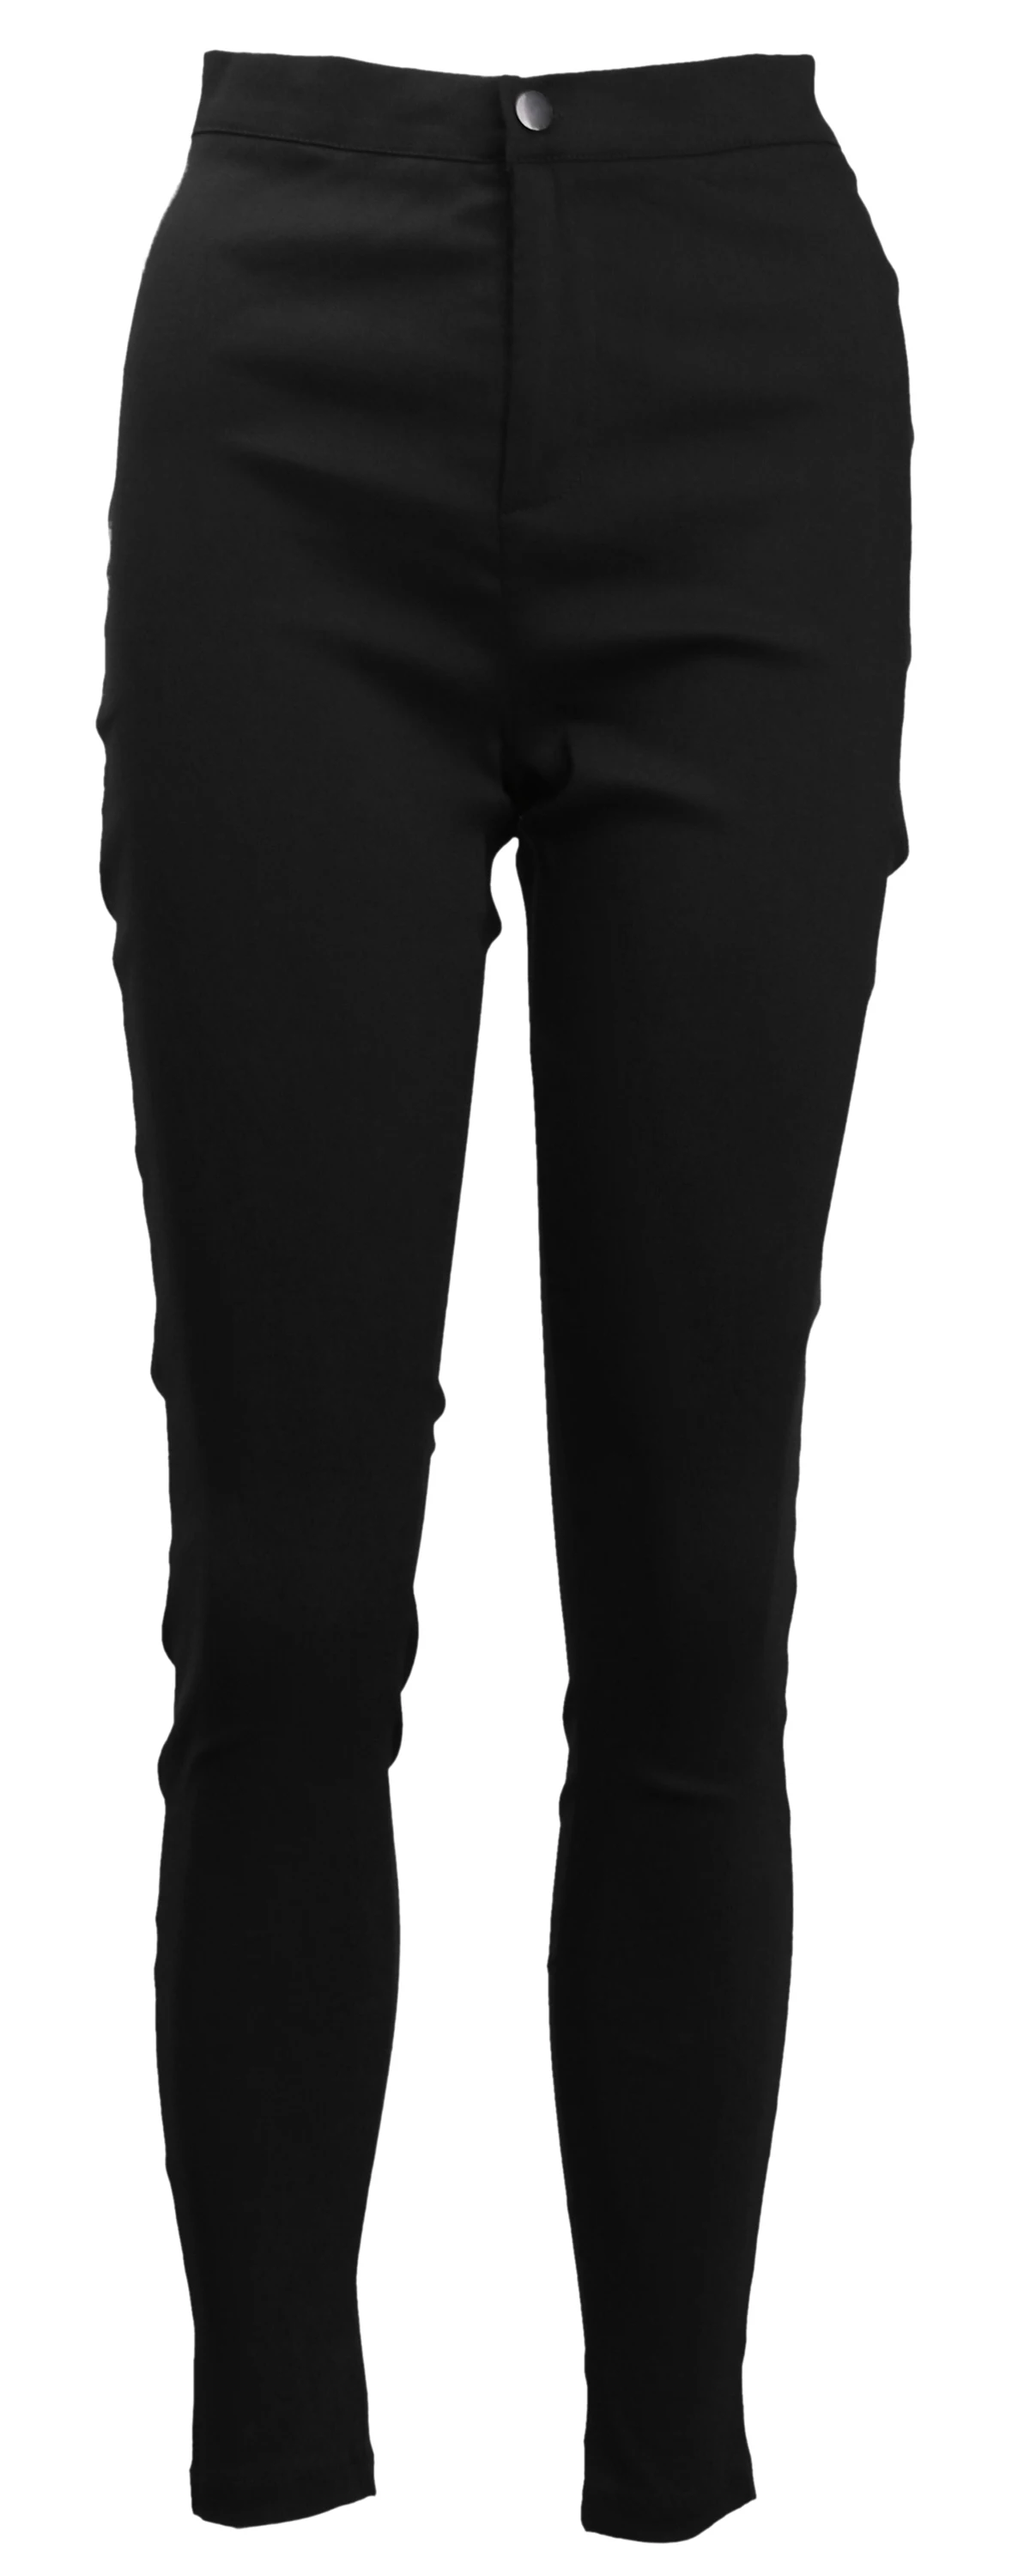 Сделано в Китае, женские джинсовые обтягивающие леггинсы, брюки с высокой талией, Стрейчевые джинсы, Розовые узкие брюки - Цвет: Черный